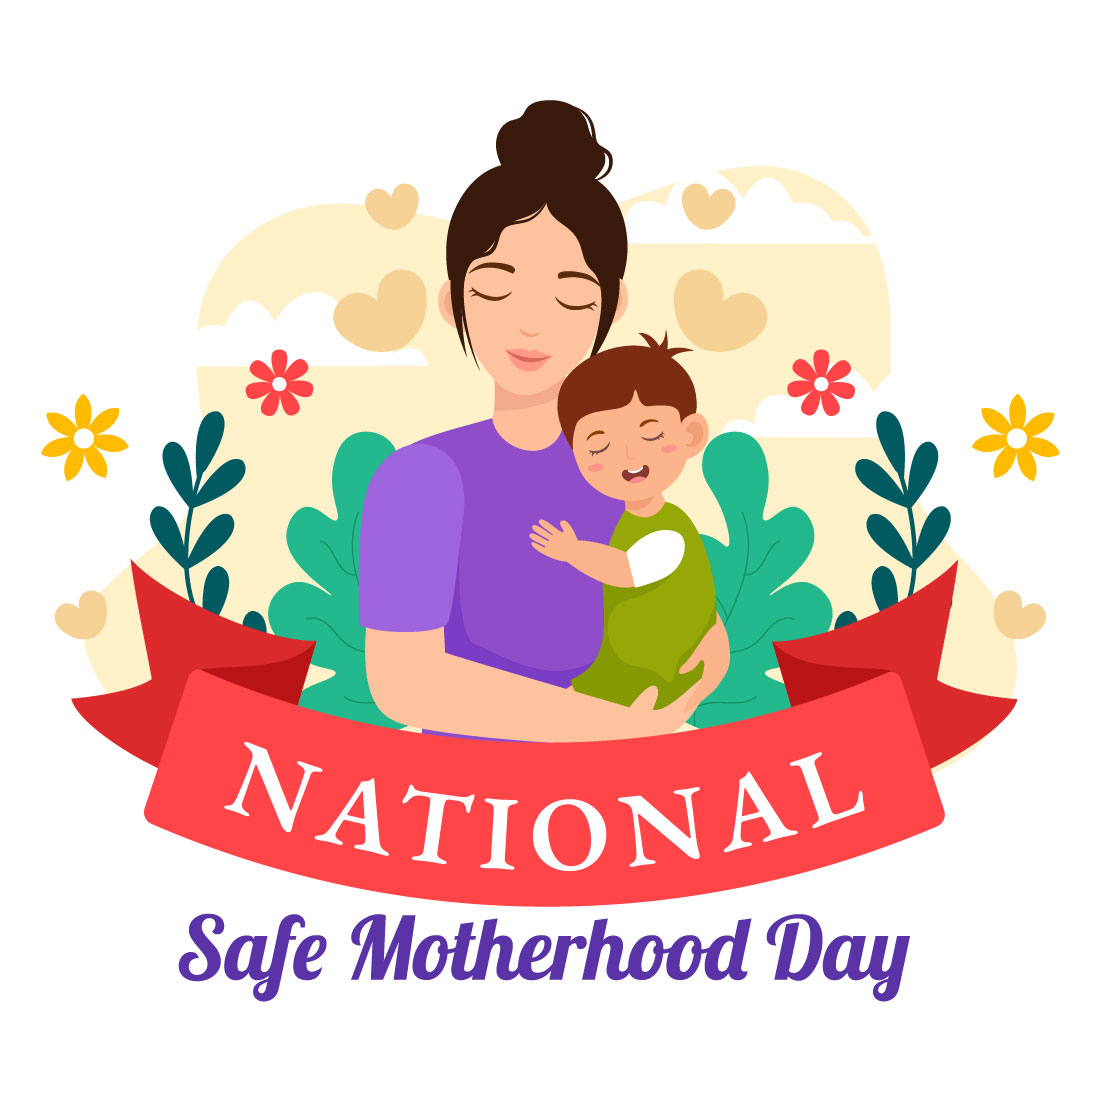 12 National Safe Motherhood Day Illustration cover image.